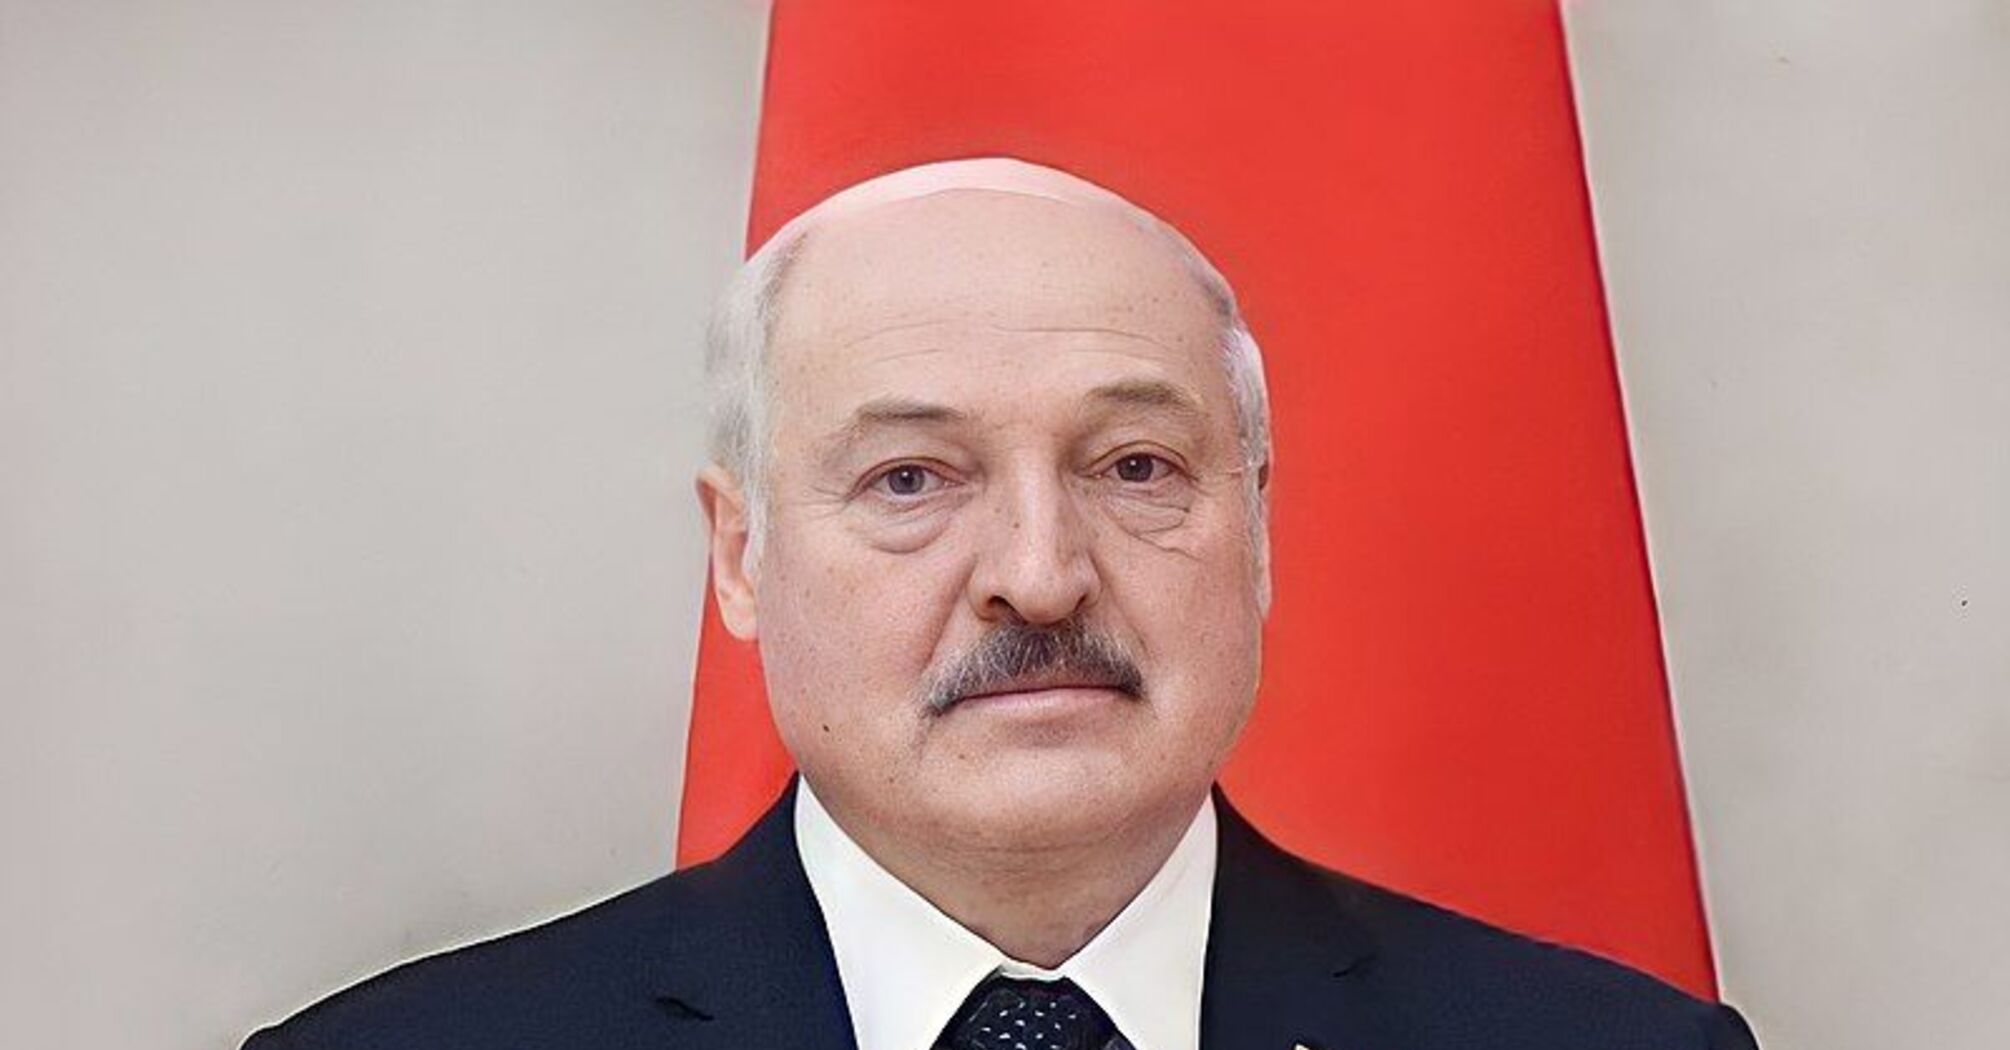 Лукашенко призначив дату референдуму щодо зміни Конституції